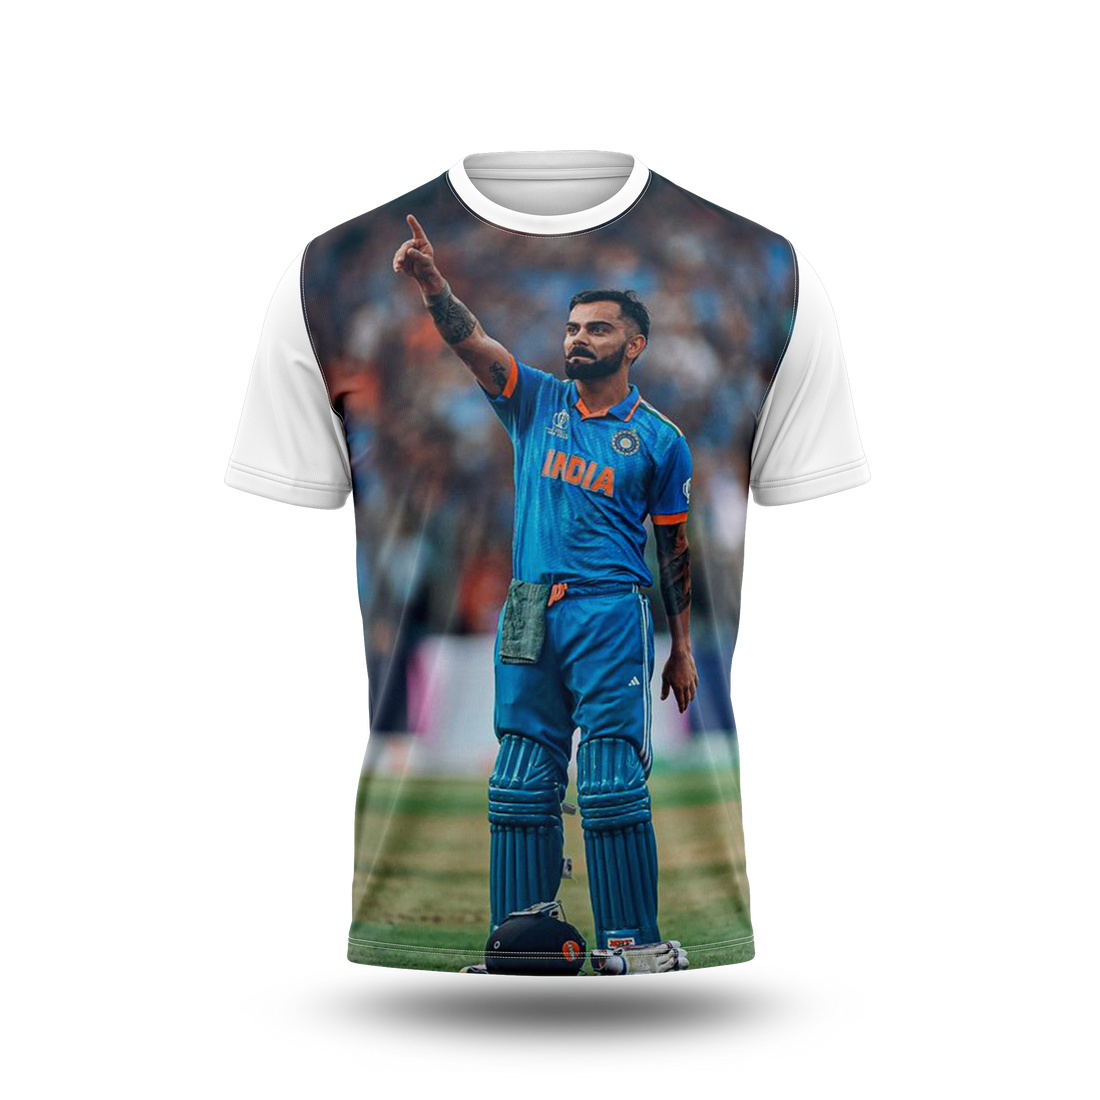 Virat Kohli Photo Printed T-Shirt.